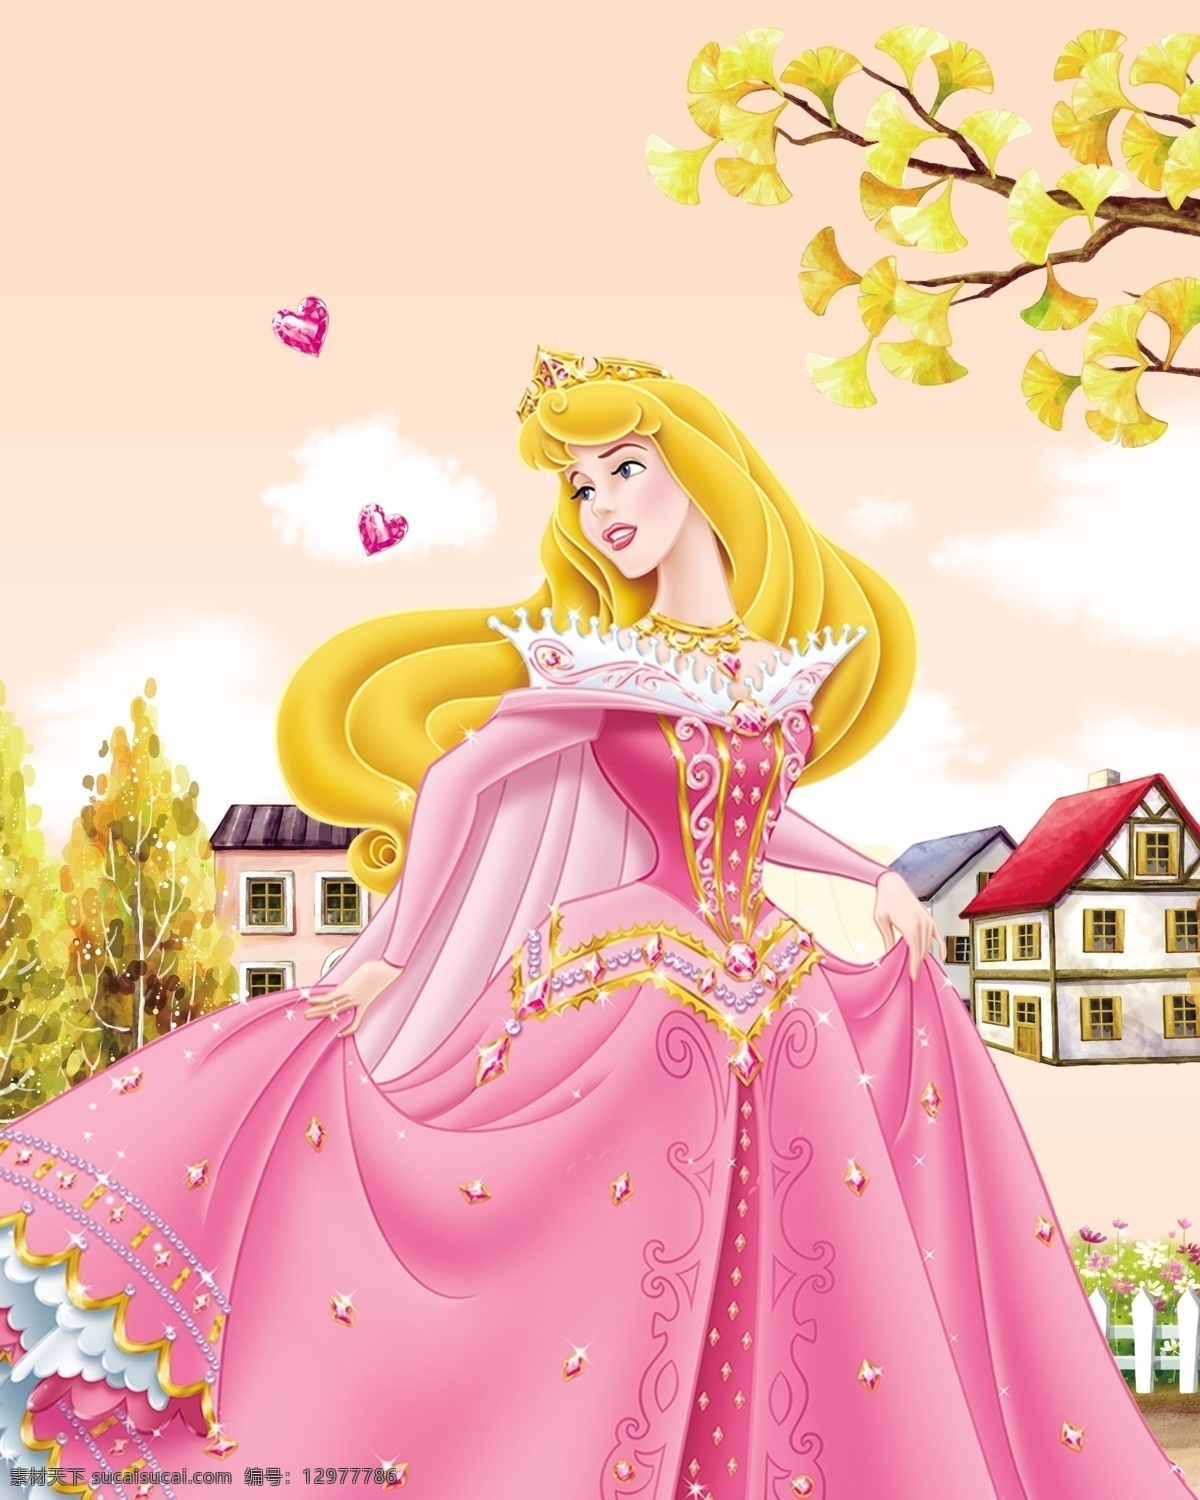 迪斯尼公主 公主 卡通人物 漂亮公主 温馨背景 文化艺术